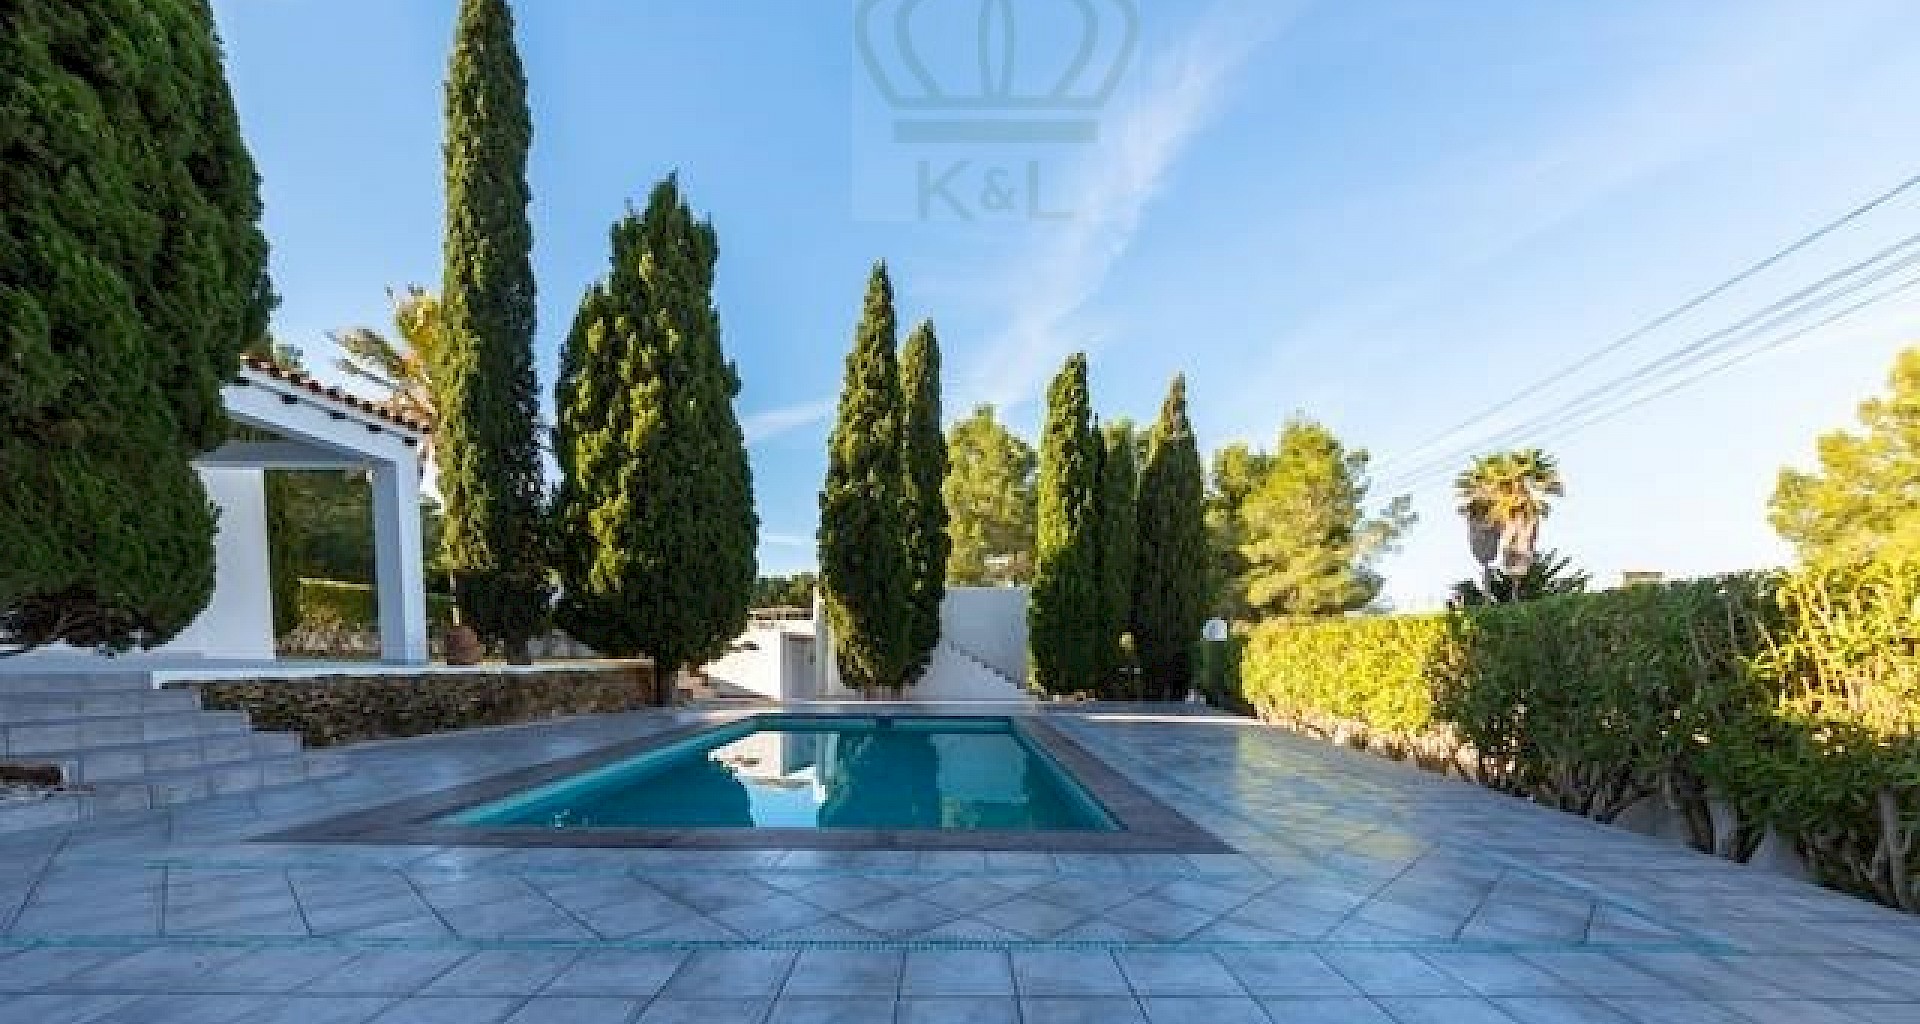 KROHN & LUEDEMANN Casa completamente renovada en Ibiza con piscina y mucha privacidad Benimussa (12)